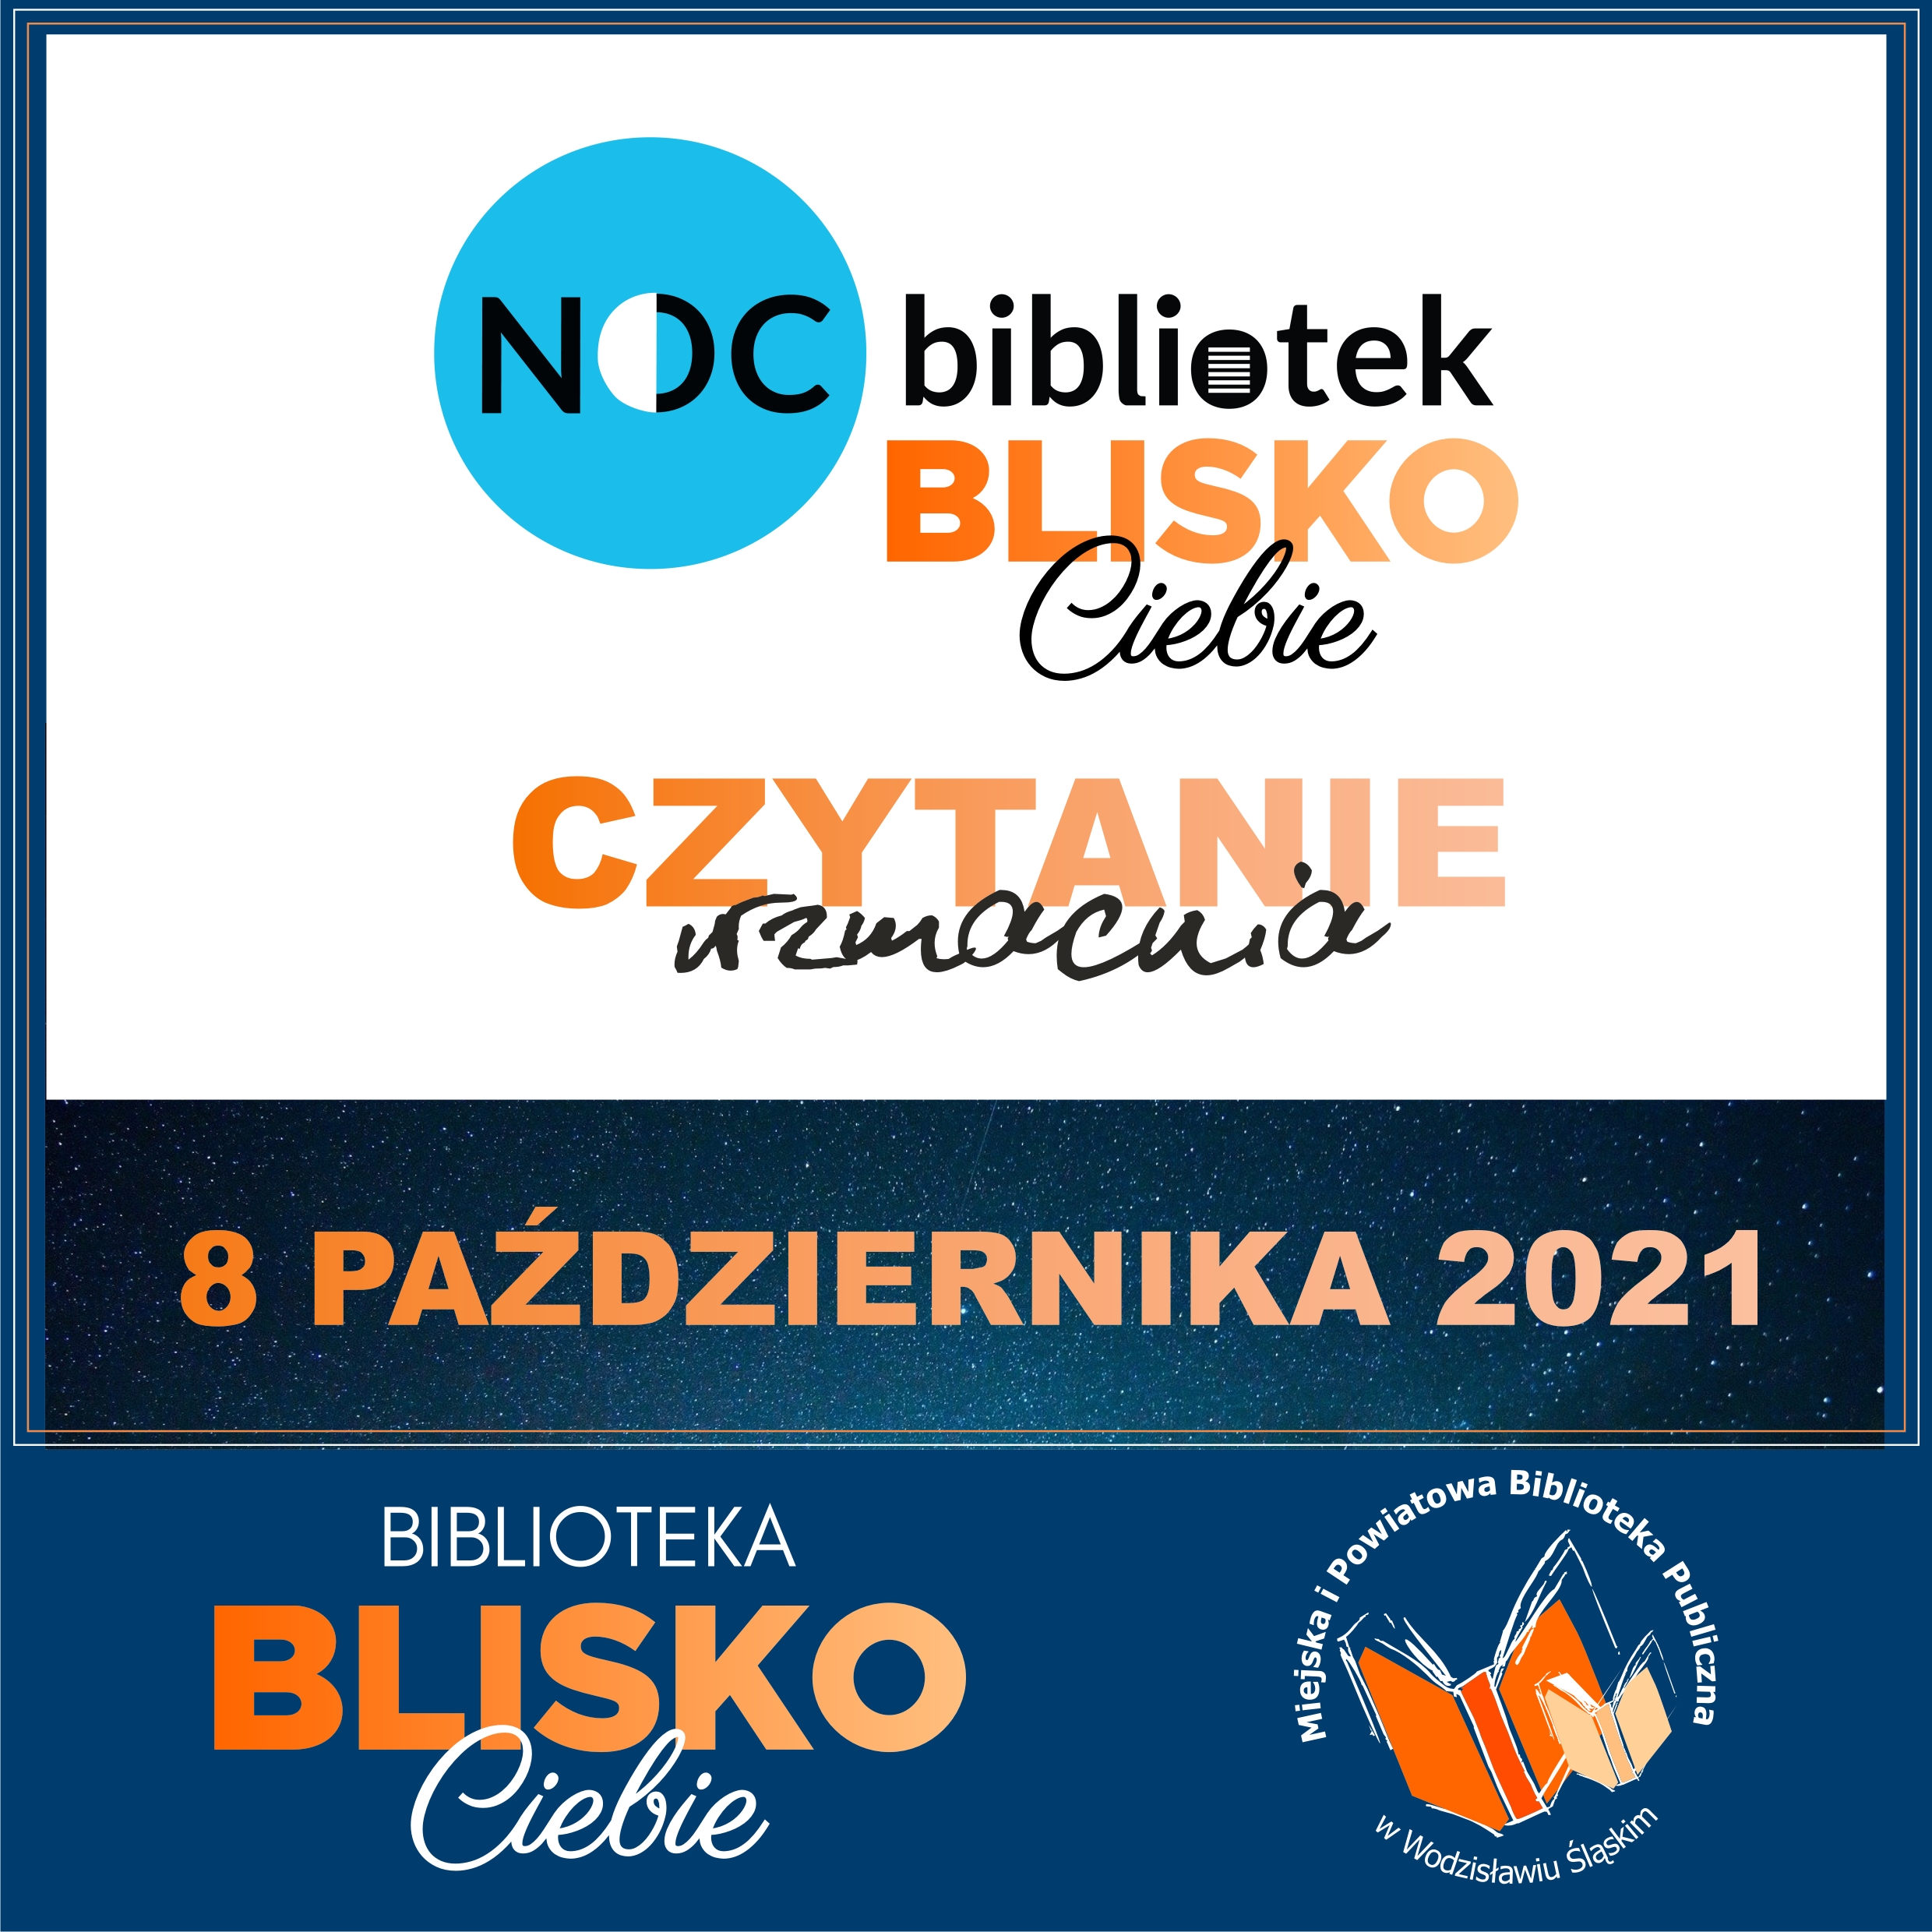 Noc Bibliotek Blisko Ciebie - Czytanie Wzmacnia - Projekt: Biblioteka BLISKO Ciebie - 8 Października 2021